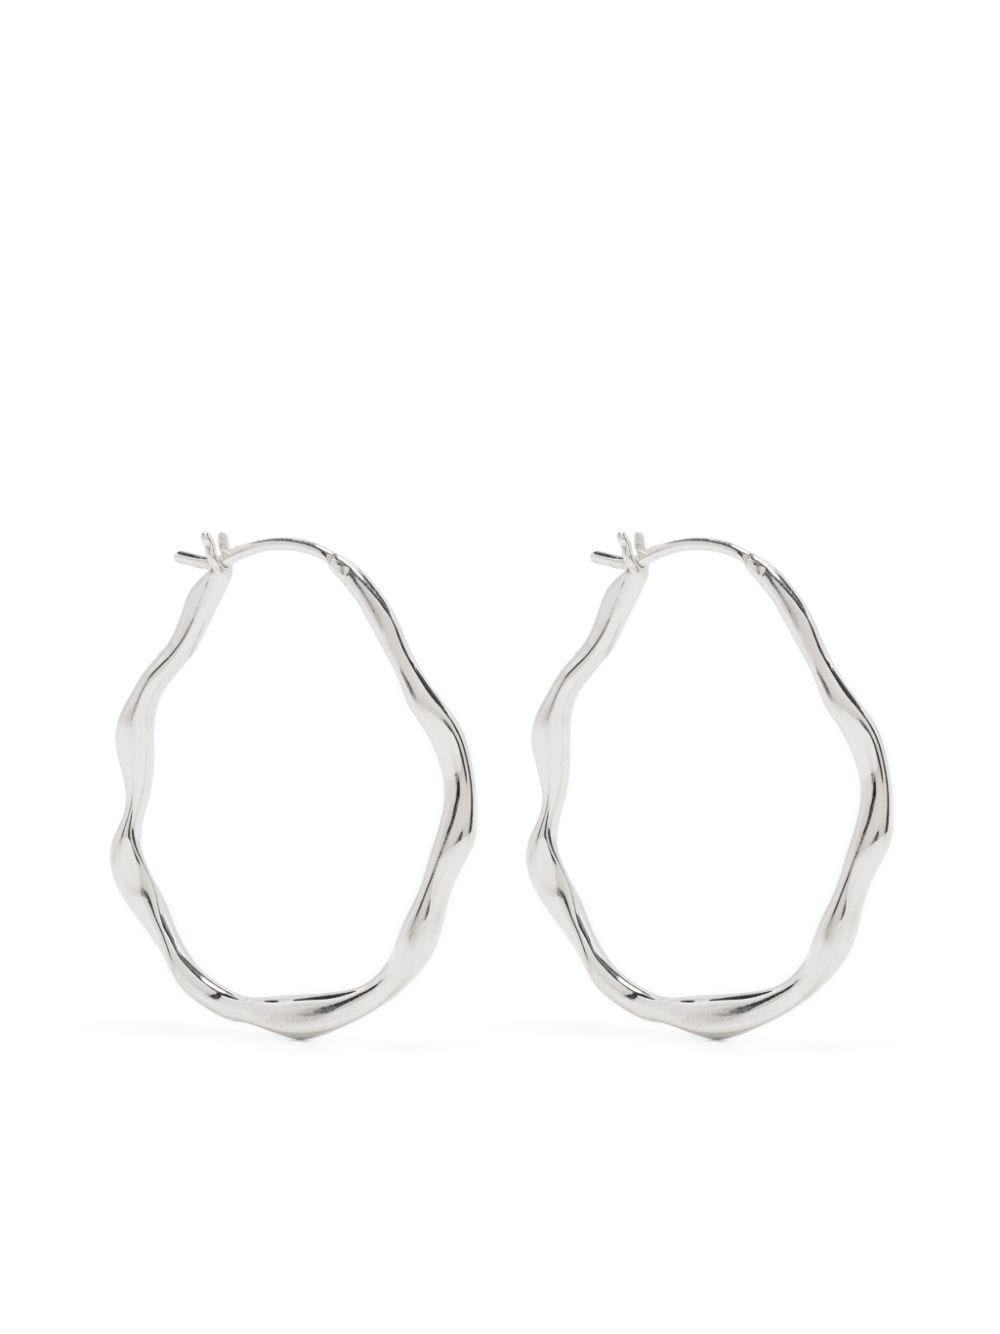 Waterfall oval hoop earrings